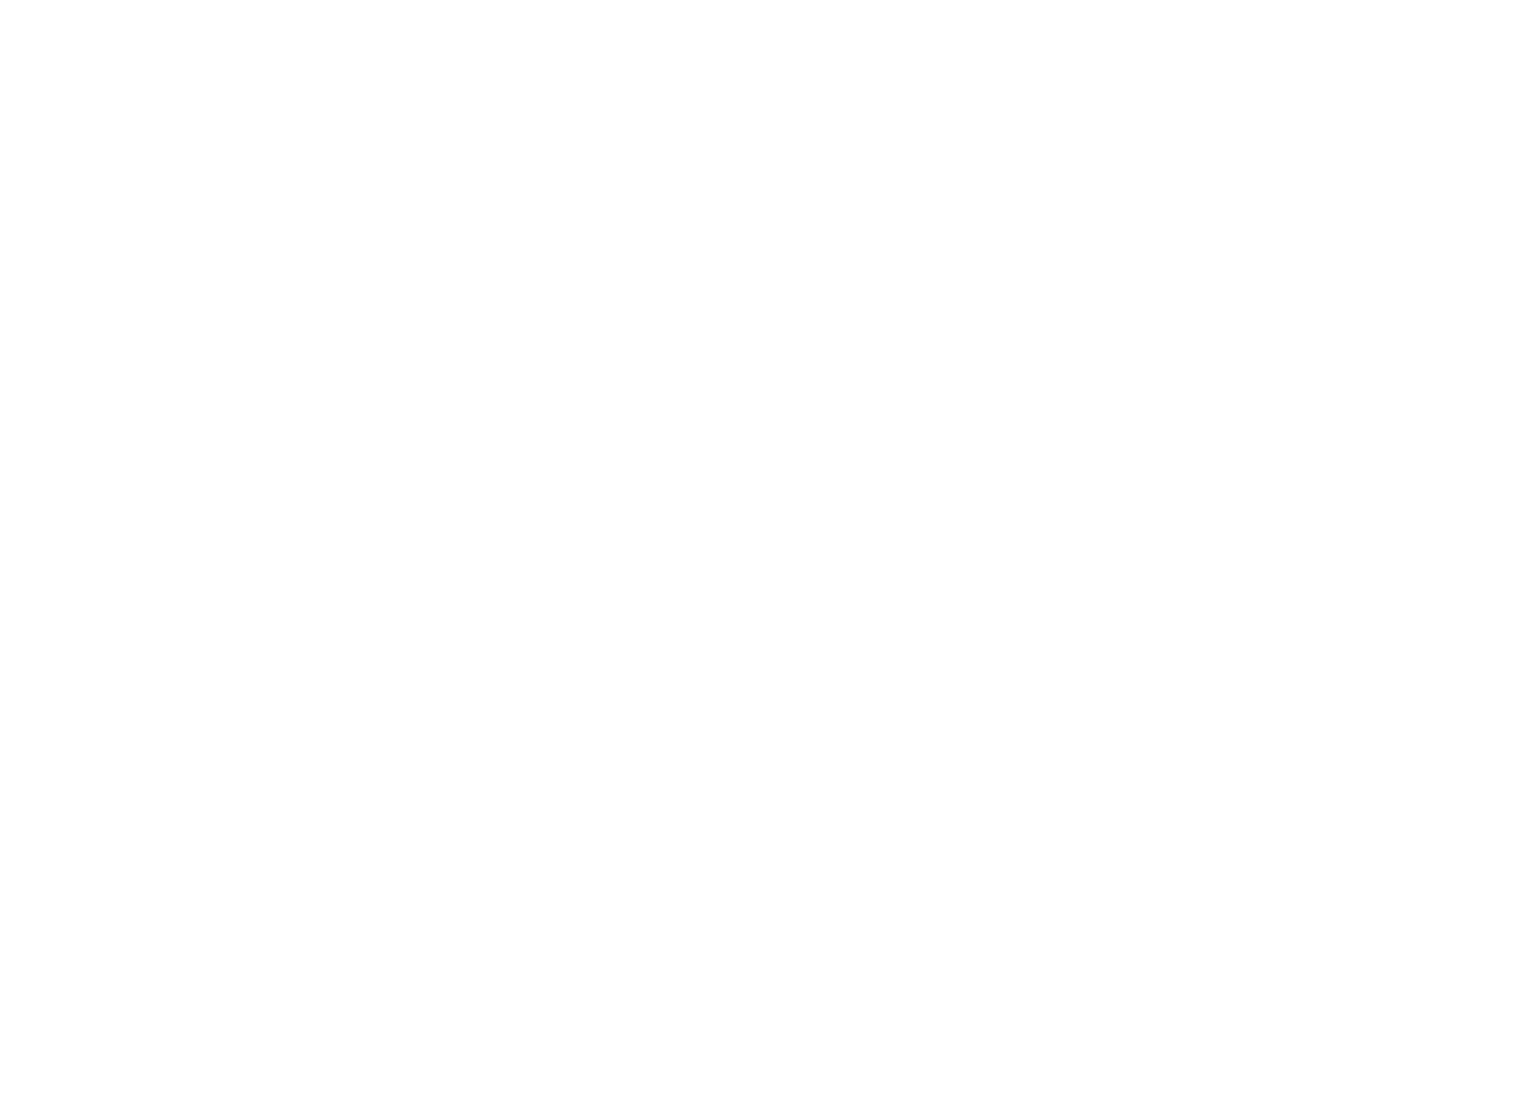 Information Services Group logo pour fonds sombres (PNG transparent)